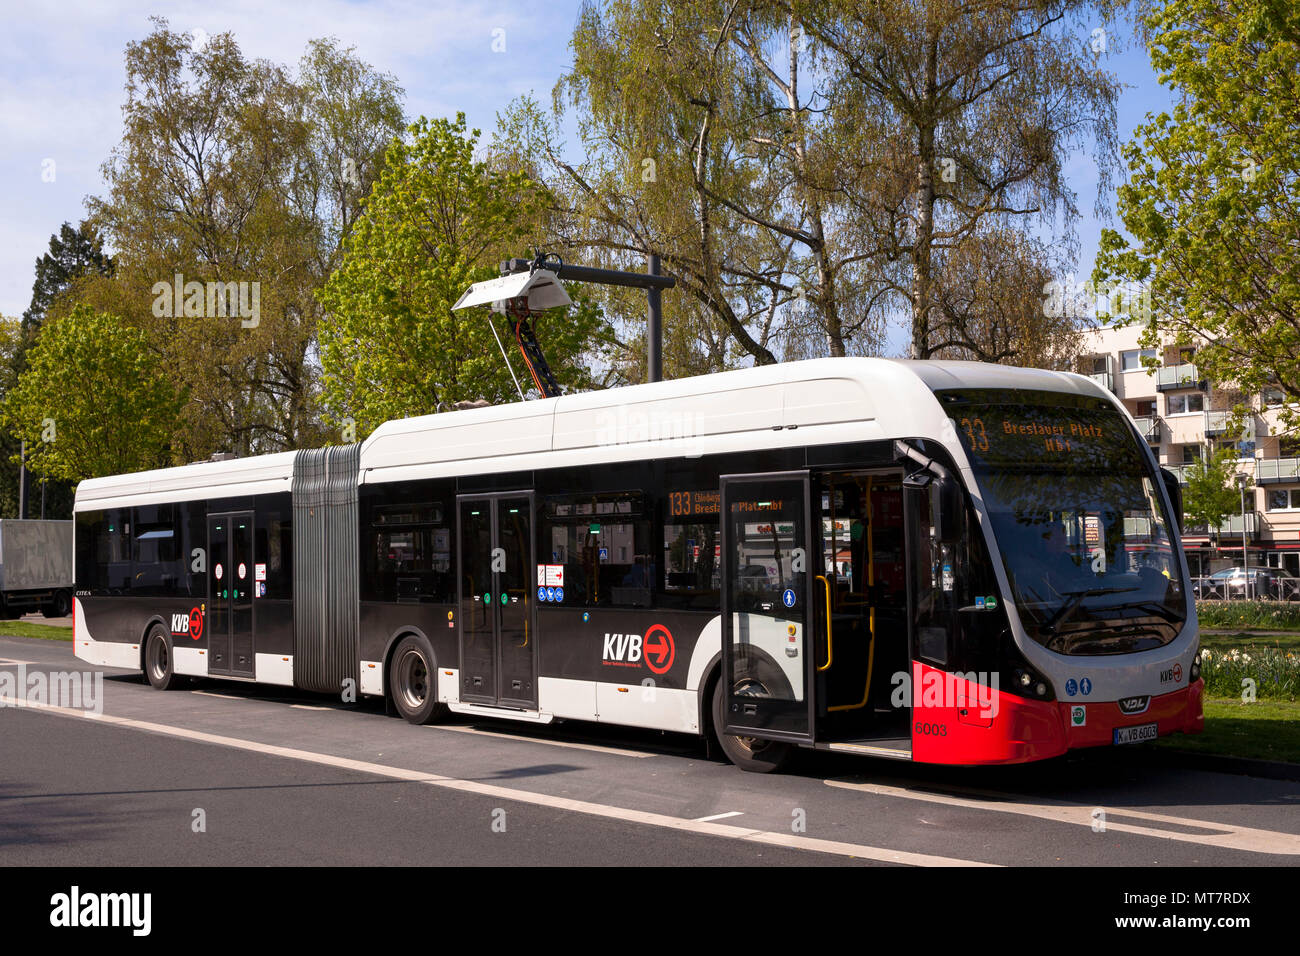 Electric Bus der Linie 133 an eine Ladestation an hoeninger Platz, Köln, Deutschland. Elektrobus der Linie 133 ein einer Ladestation bin Hoeninger P Stockfoto